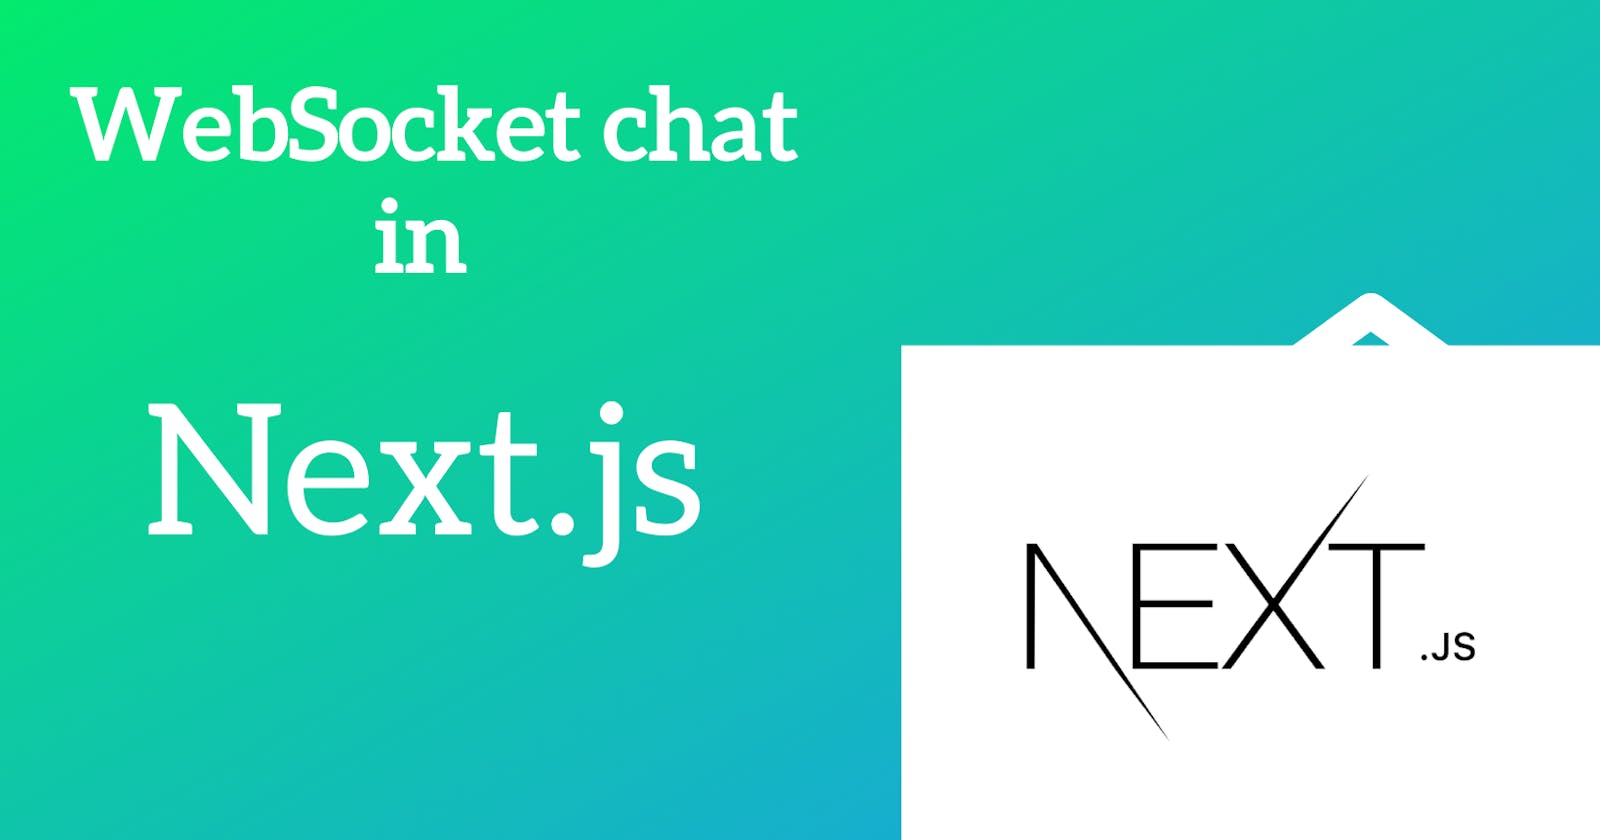 WebSocket chat in Next.js